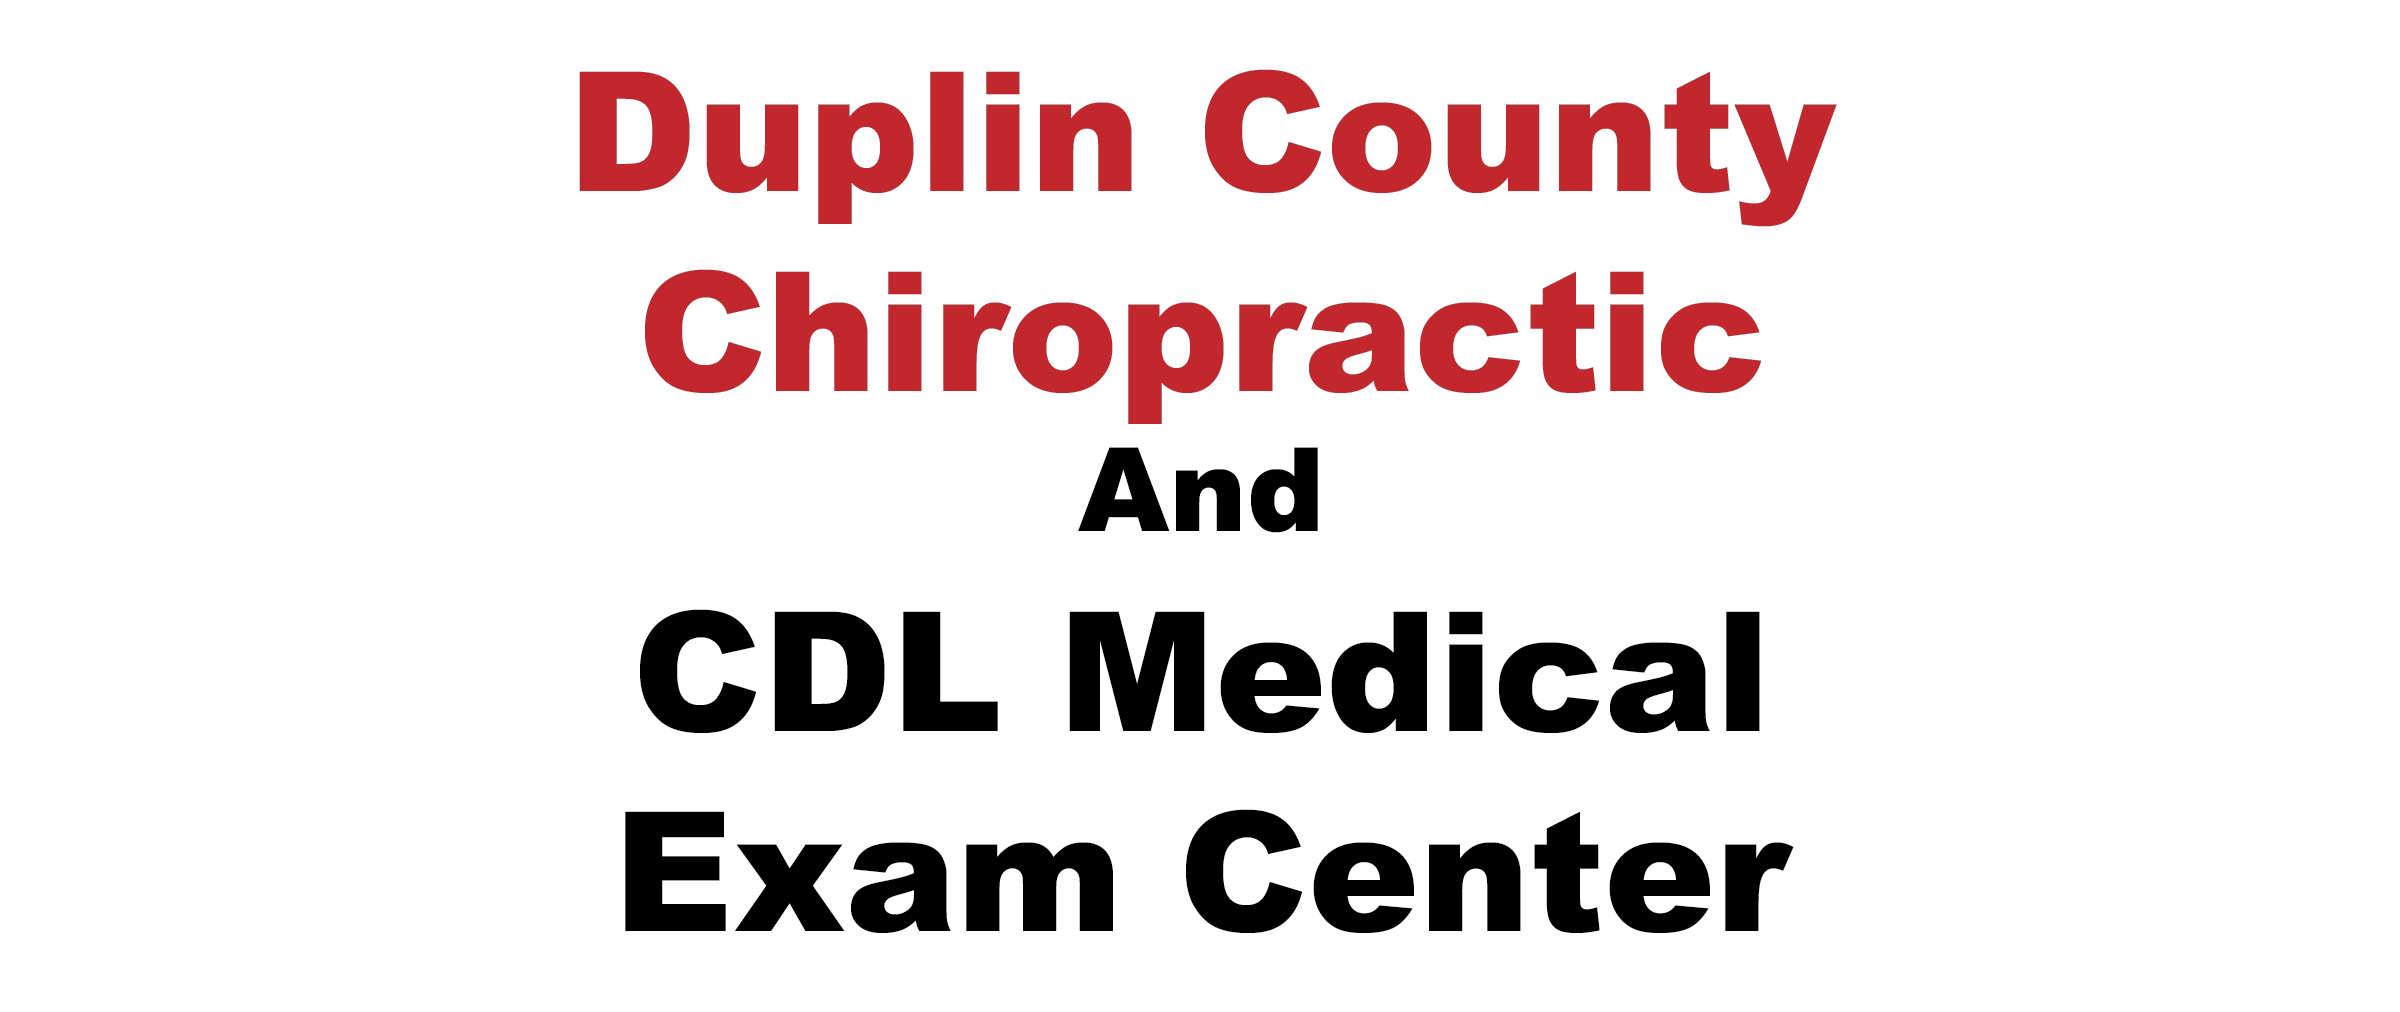 Duplin County Chiropractic Center